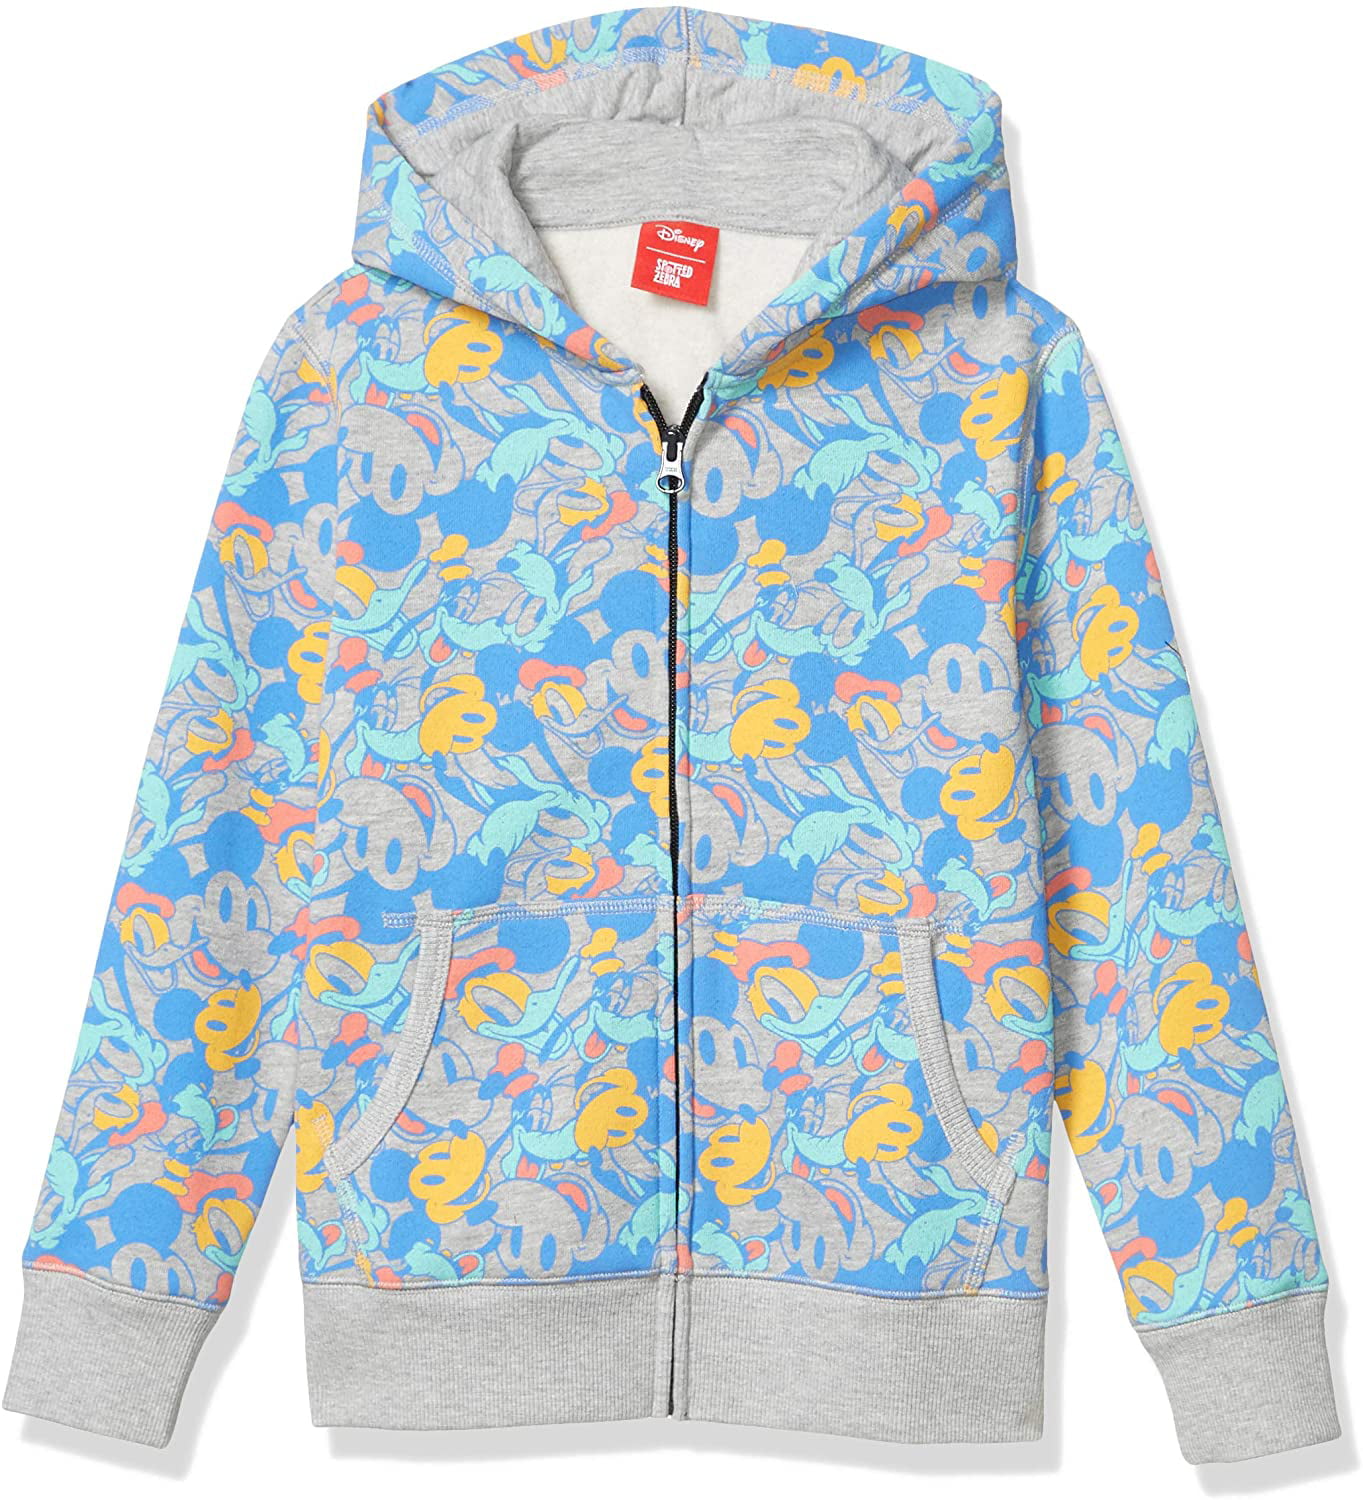 Boys Disney Star Wars Marvel Fleece Zip up Hoodie Sweatshirts Mickey Jumble  Medium - Walmart.com